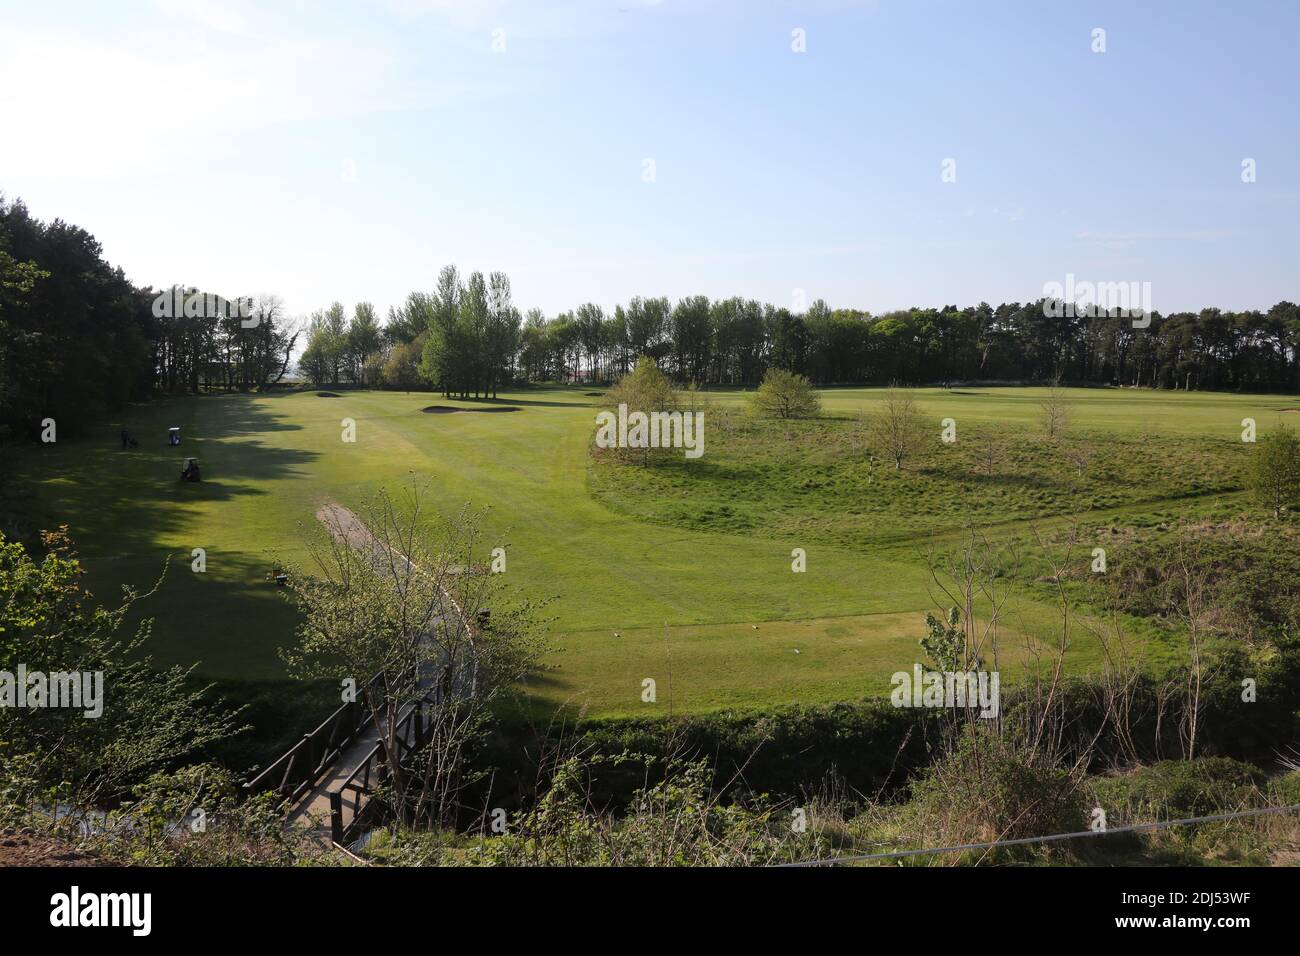 Parcours de golf et parc Belleisle Seafield, South Ayrshire, Écosse, Royaume-Uni. Belleisle Estate est une attraction familiale populaire avec son parc de cerfs, son aire de jeux pour enfants, ses promenades dans les bois et son jardin clos formel.UN programme complet de 3,7 millions de livres pour restaurer Belleisle Estate a commencé en 2014, après que le projet ait obtenu une subvention de 1,9 millions de livres sterling du Heritage Lottery Fund. Le domaine dispose également de deux parcours de golf publics de 18 trous conçus par M. James Braid (représentés par une statue en bois sculpté). Le club de golf récemment restauré est ouvert au public et propose un café et des toillets Banque D'Images